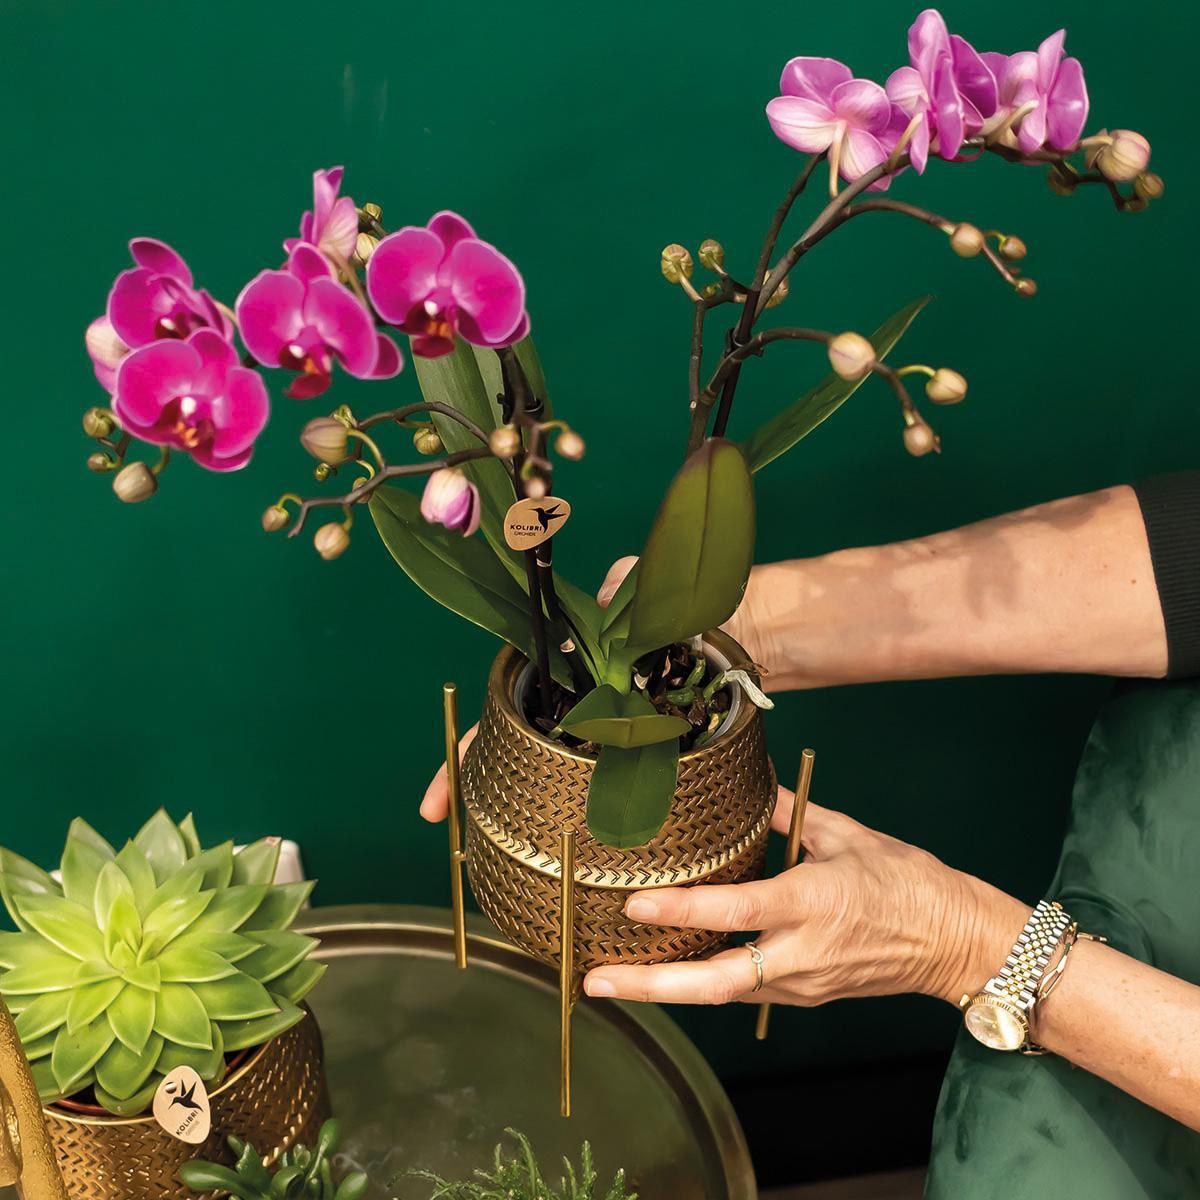 Lila Orchidee und ihr goldener Blumentopf - blühende Zimmerpflanze